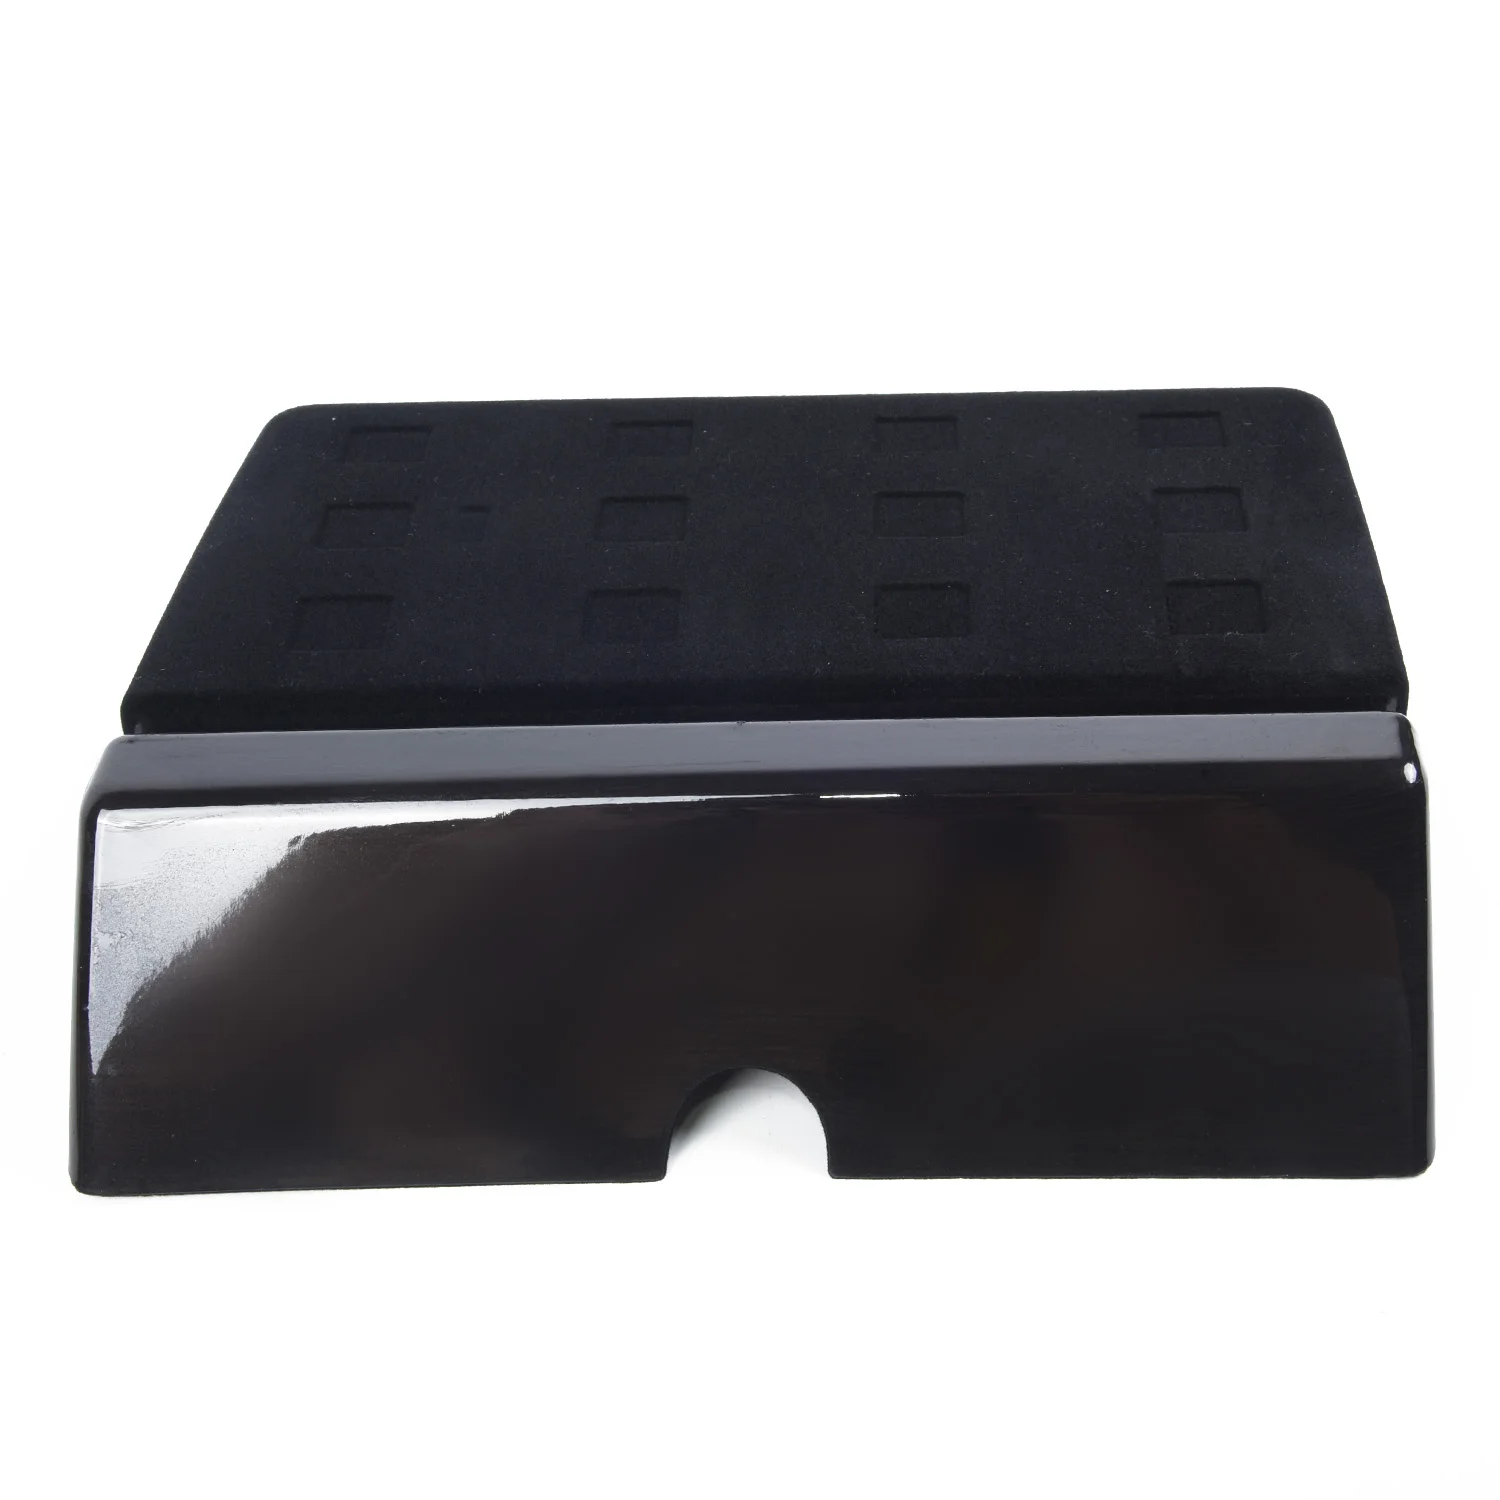 1 шт. автомобильный ящик для хранения лоток держатель для ящиков для Tesla модель X/модель S 2012- автомобильный ящик для хранения Контейнер аксессуары